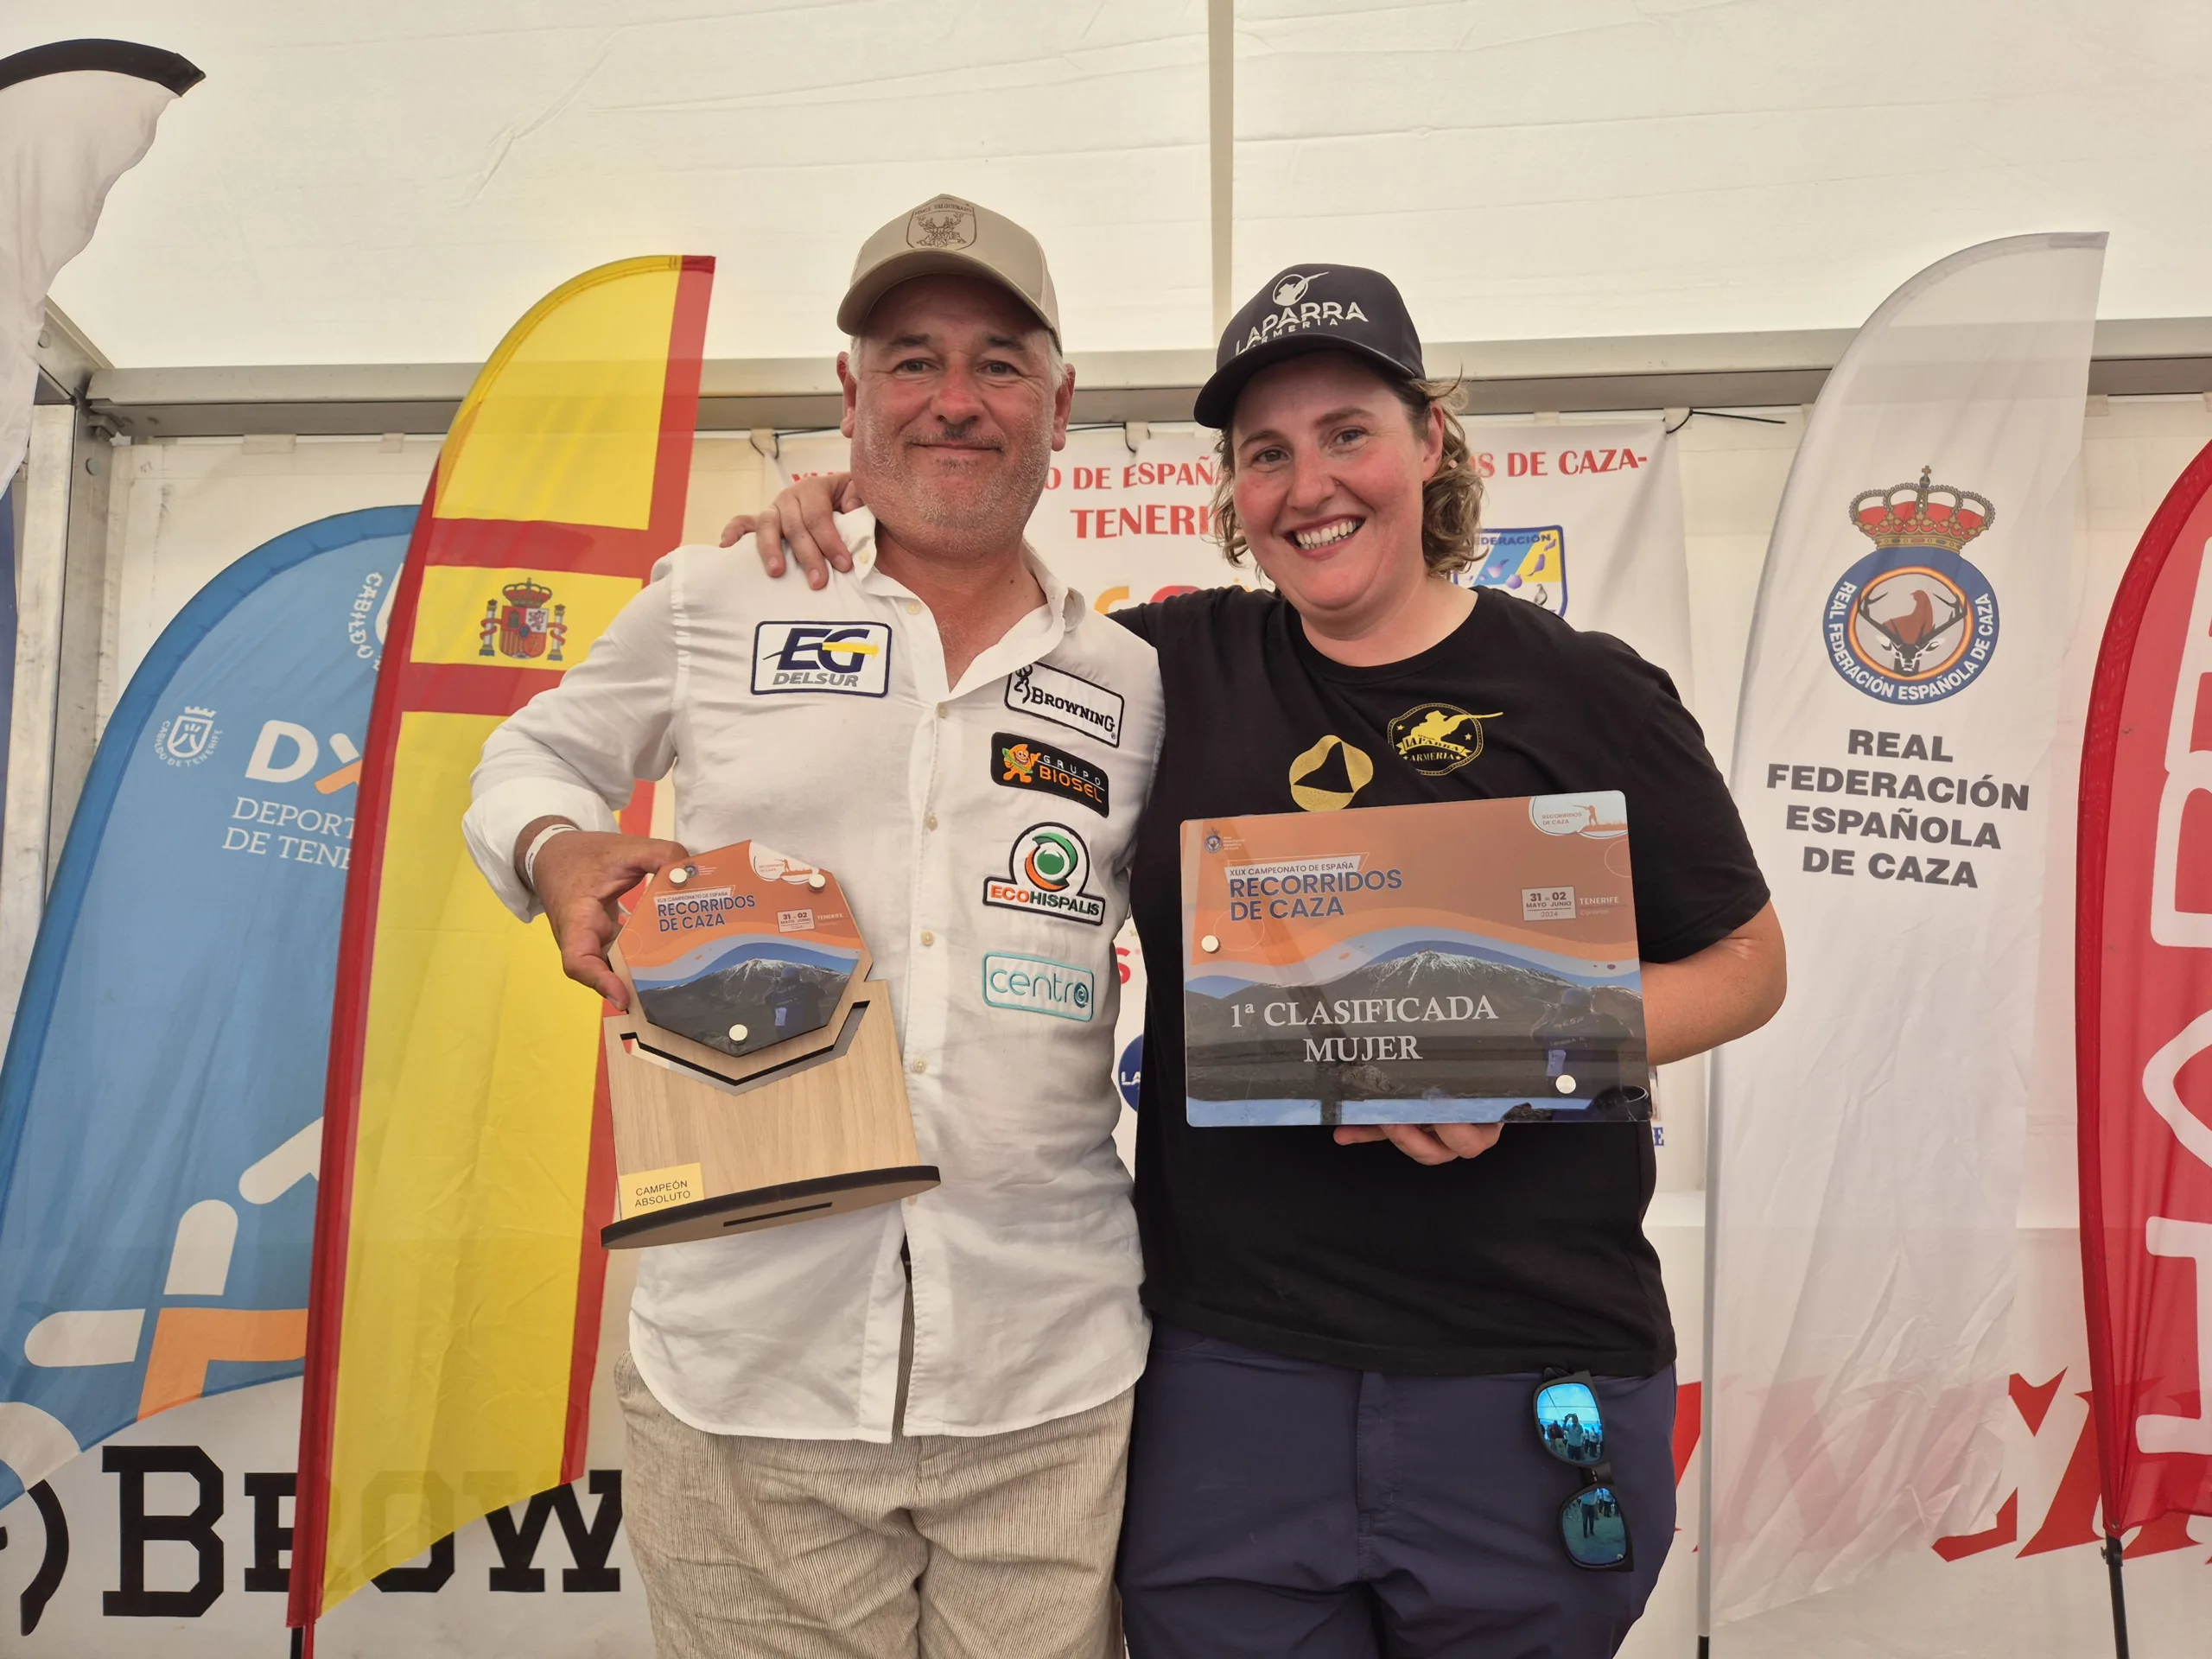 Juan Valero y Beatriz Laparra conquistan Tenerife en el XLIX Campeonato de España de Recorridos de Caza